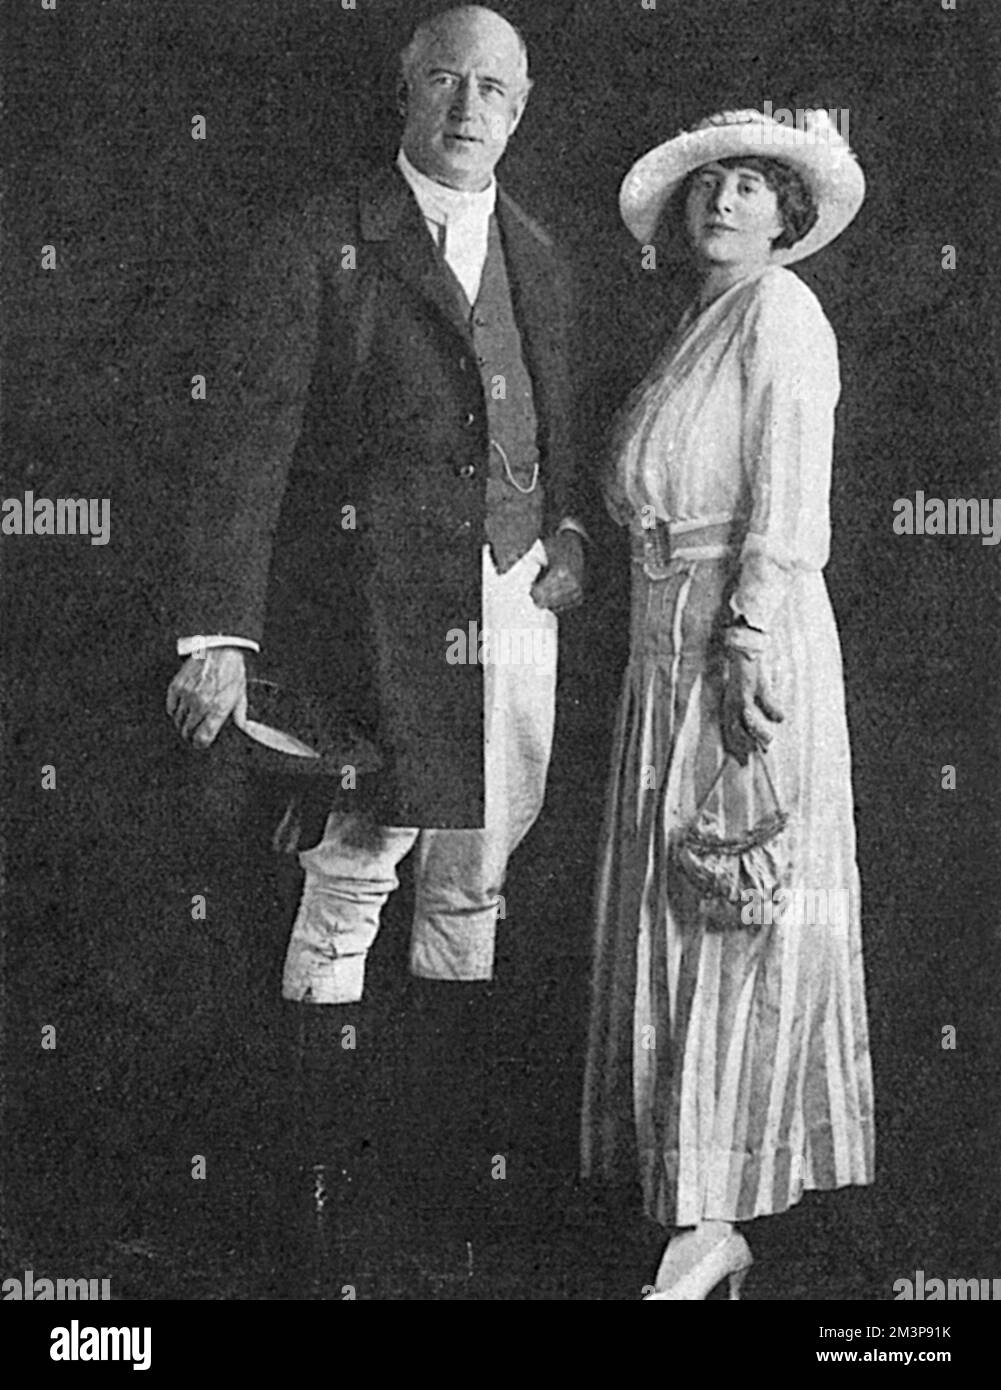 Charles Dana Gibson, illustratore americano (1867-1944), famoso per la creazione di 'The Gibson Girl'. Nella foto con la signora Haydn Harris alla Illusors' Ball a New York nel 1916. Data: 1916 Foto Stock